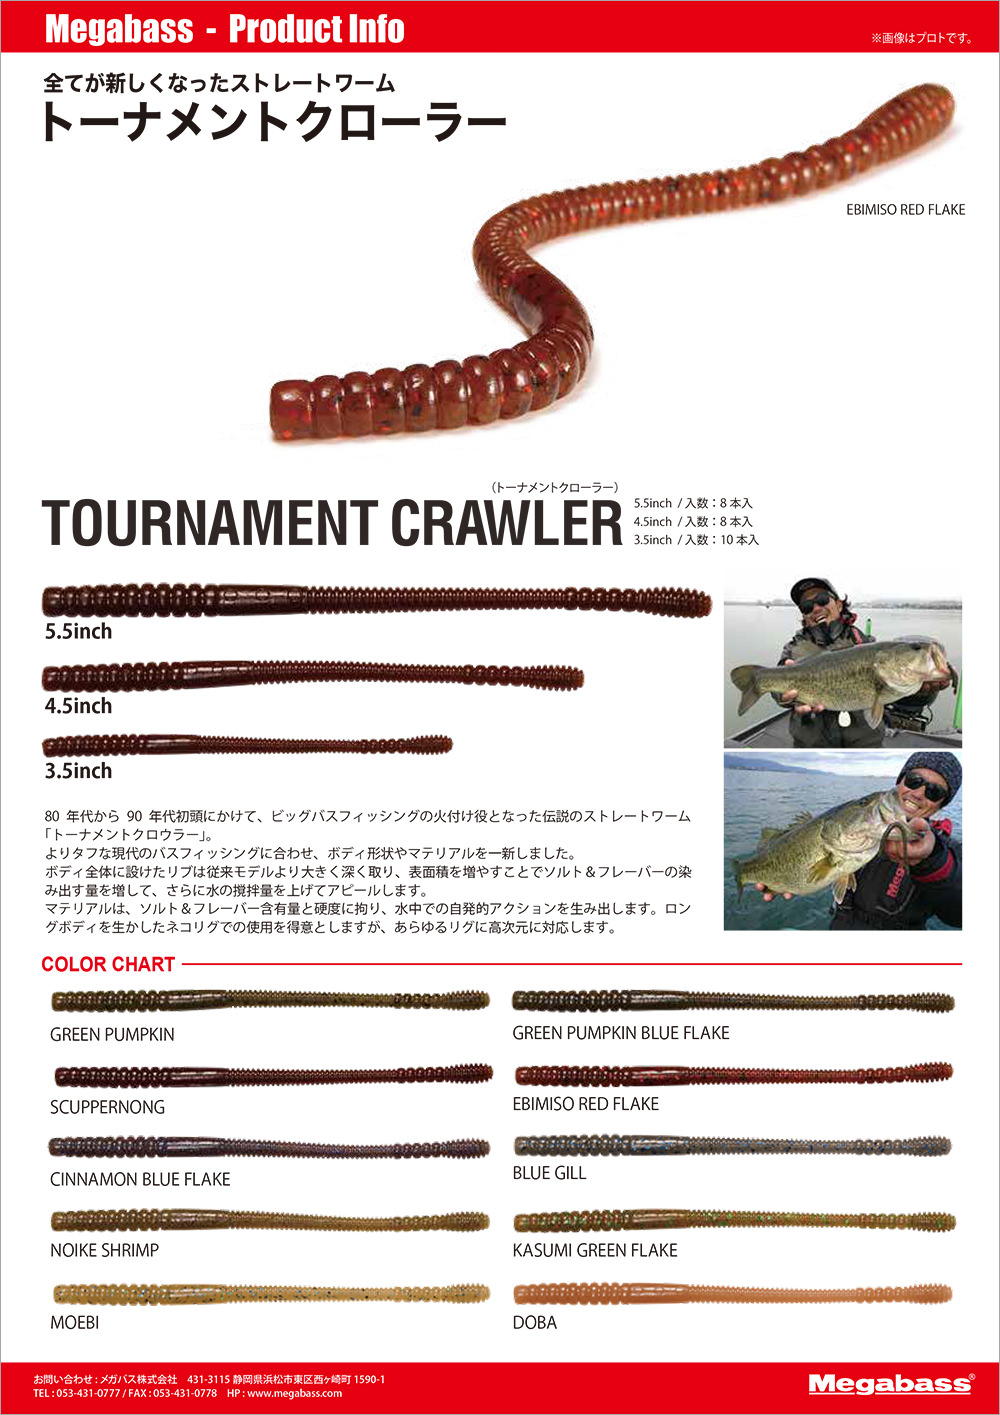 TOURNAMENT CRAWLER(トーナメントクローラー) (3.5inch) スカッパノン ルアー  Megabass - メガバス  オンラインショップ